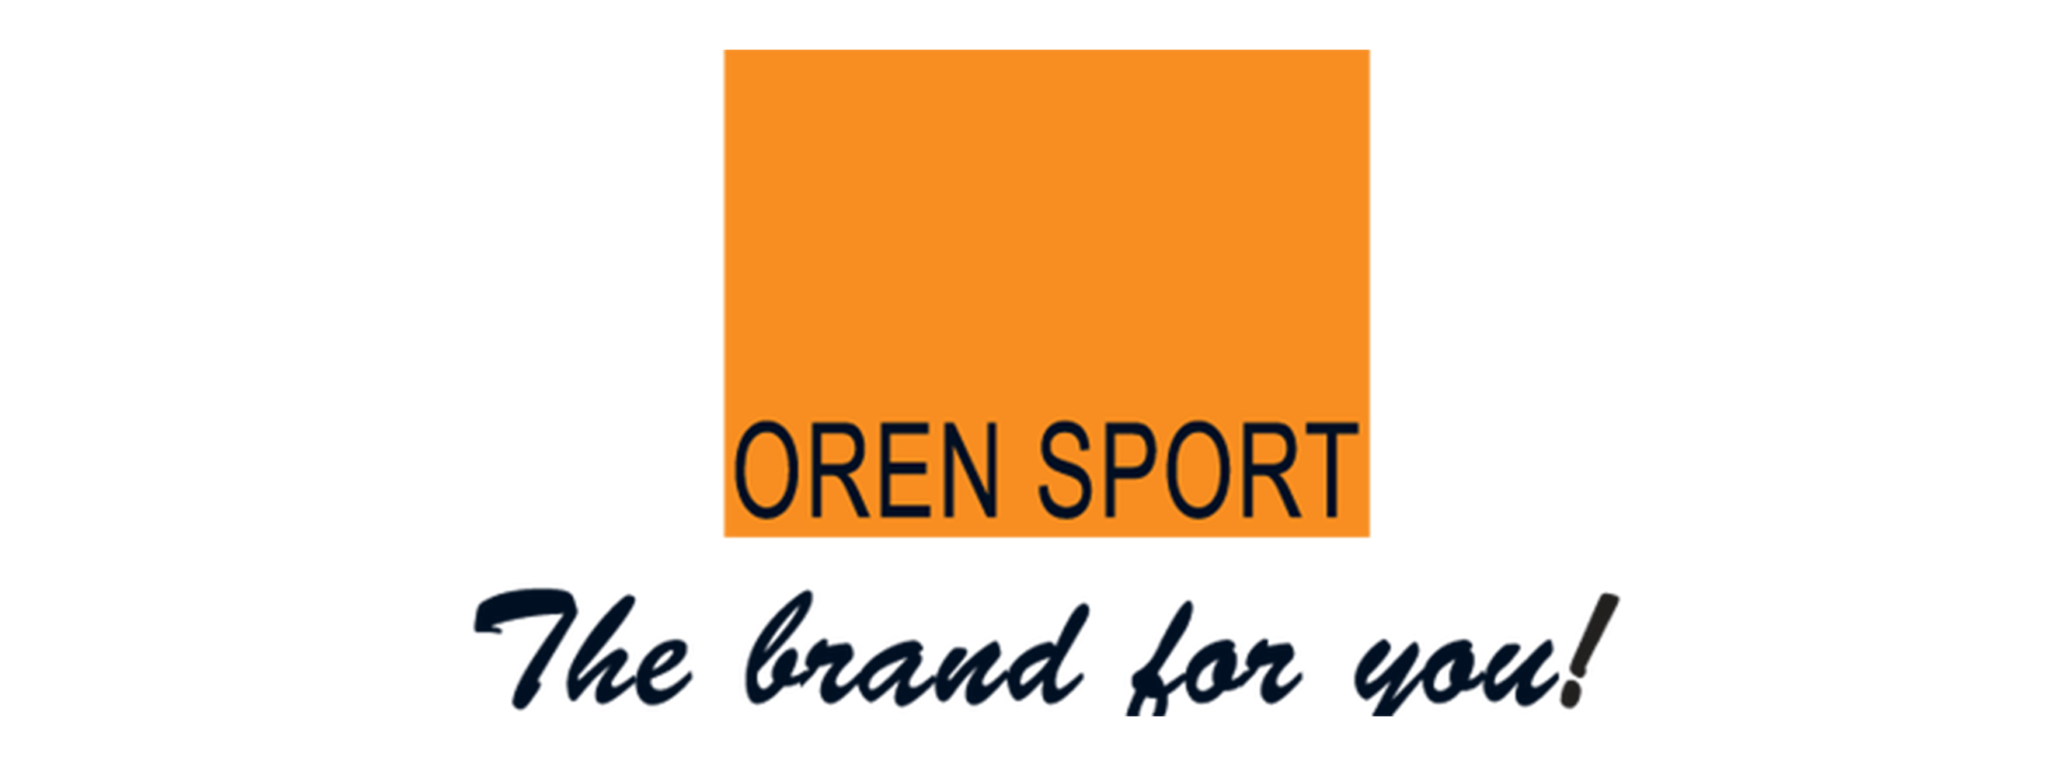 oren sport logo png